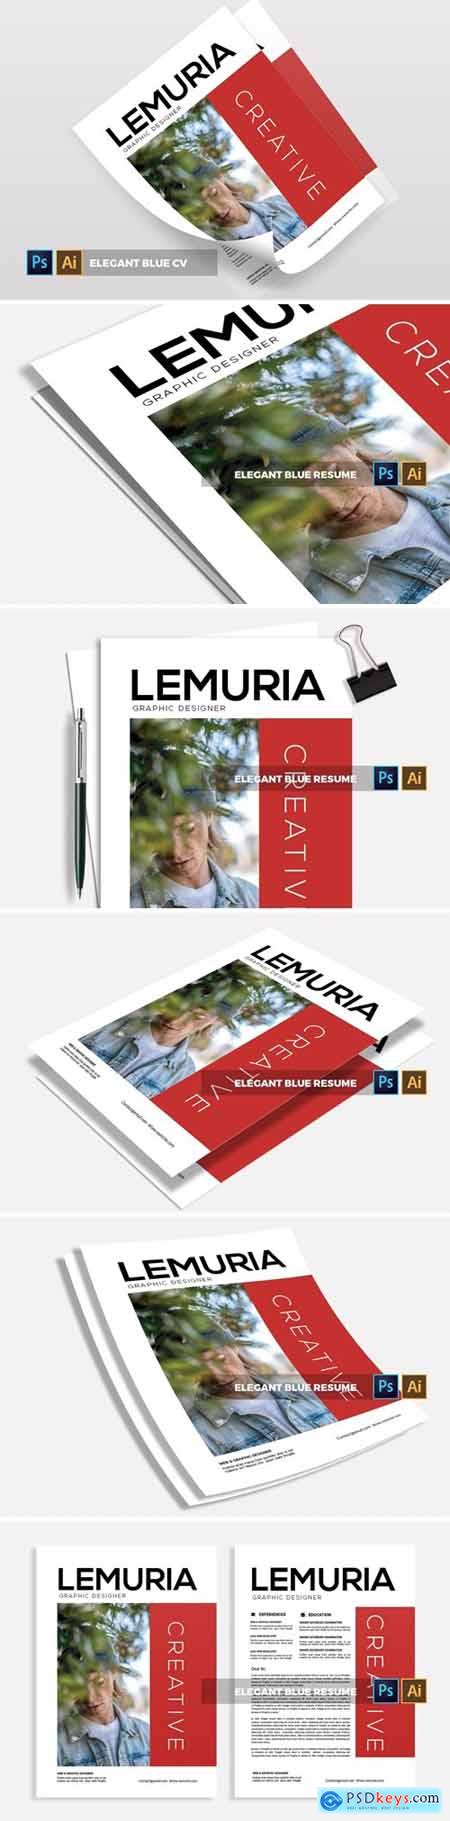 Lemuria CV & Resume